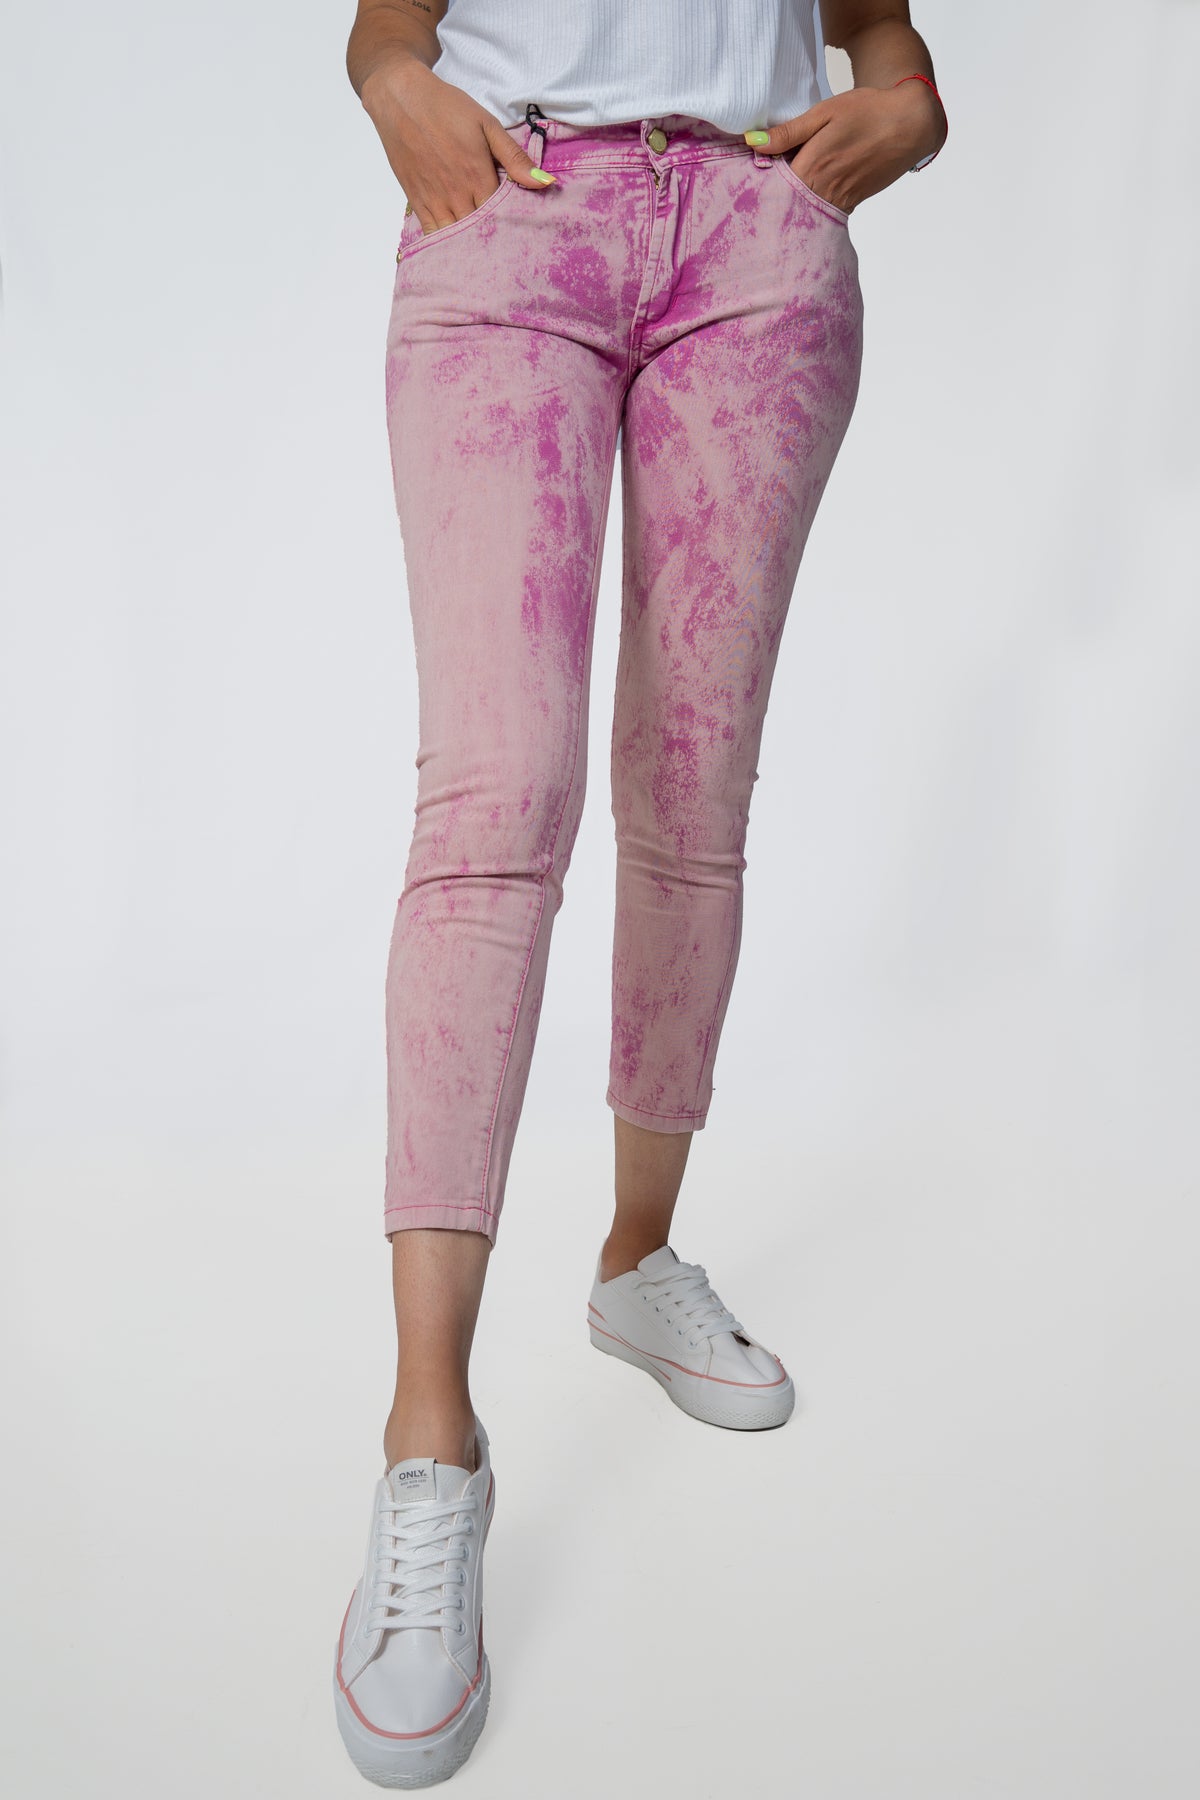 Jeans Rapsodia Queen Ankle Batik Colors Rosa